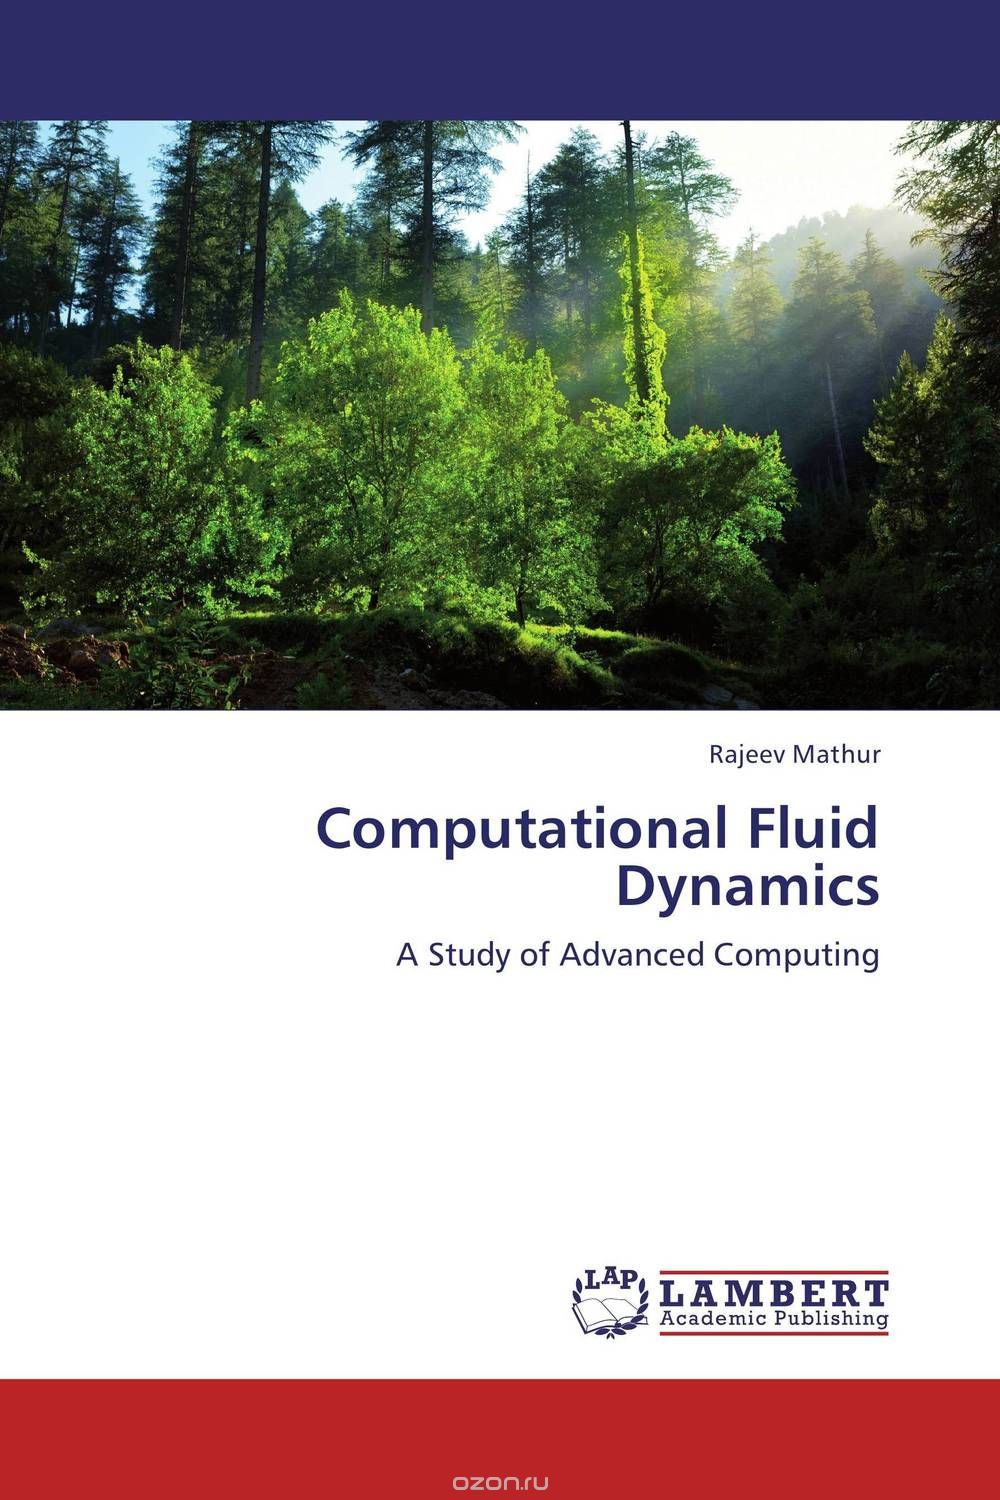 Скачать книгу "Computational Fluid Dynamics"